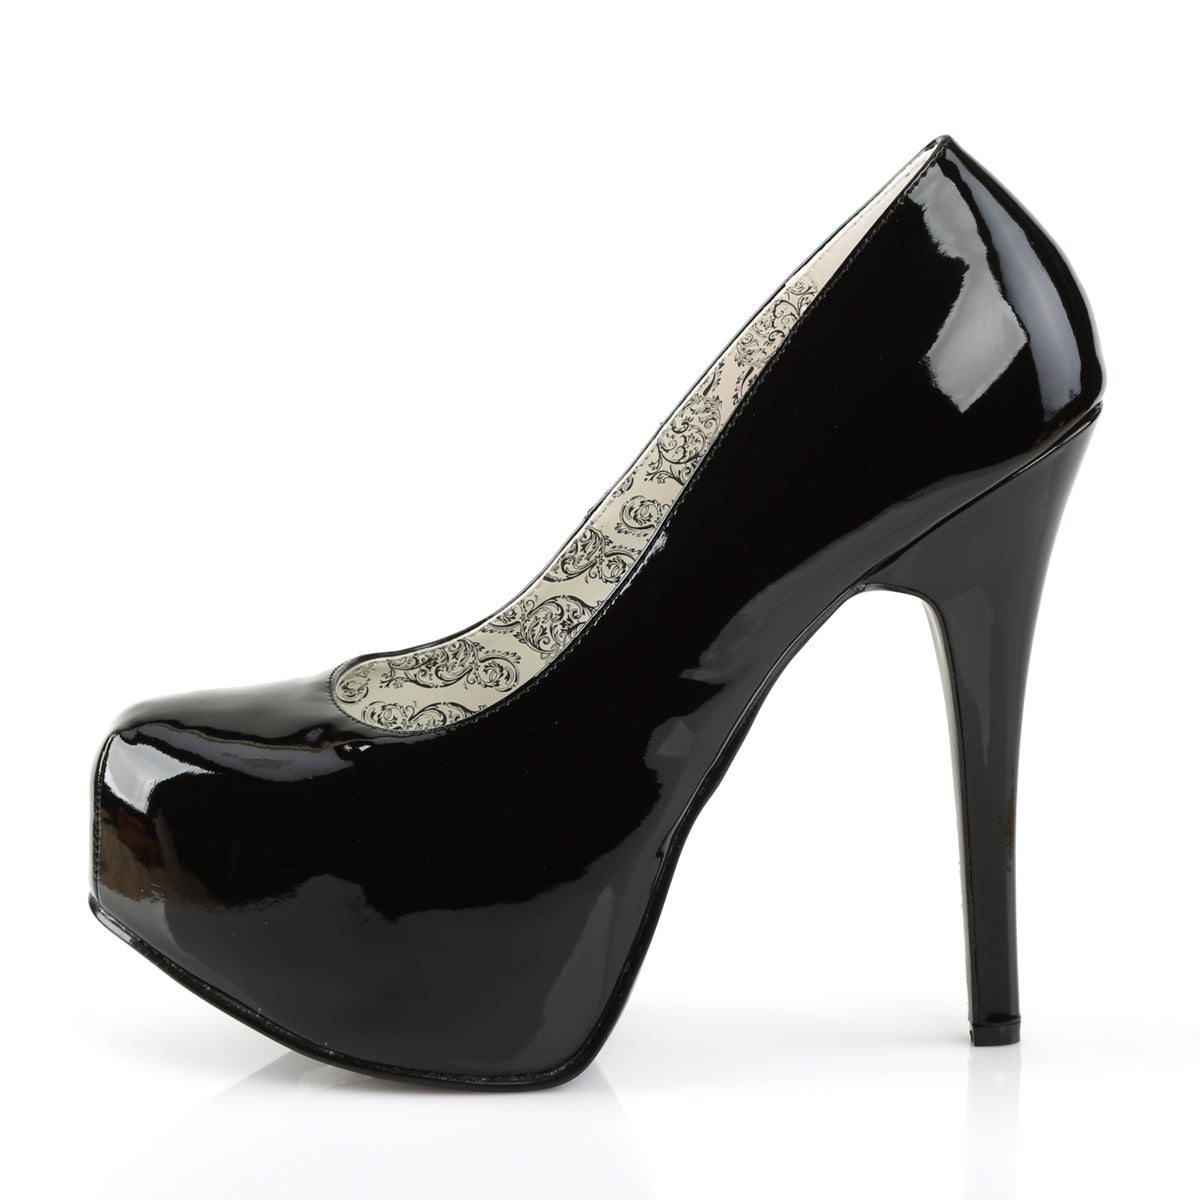 Strappy Platform Heel (WW) | Ankle strap sandals heels, Black ankle strap  heels, Strappy platform heels